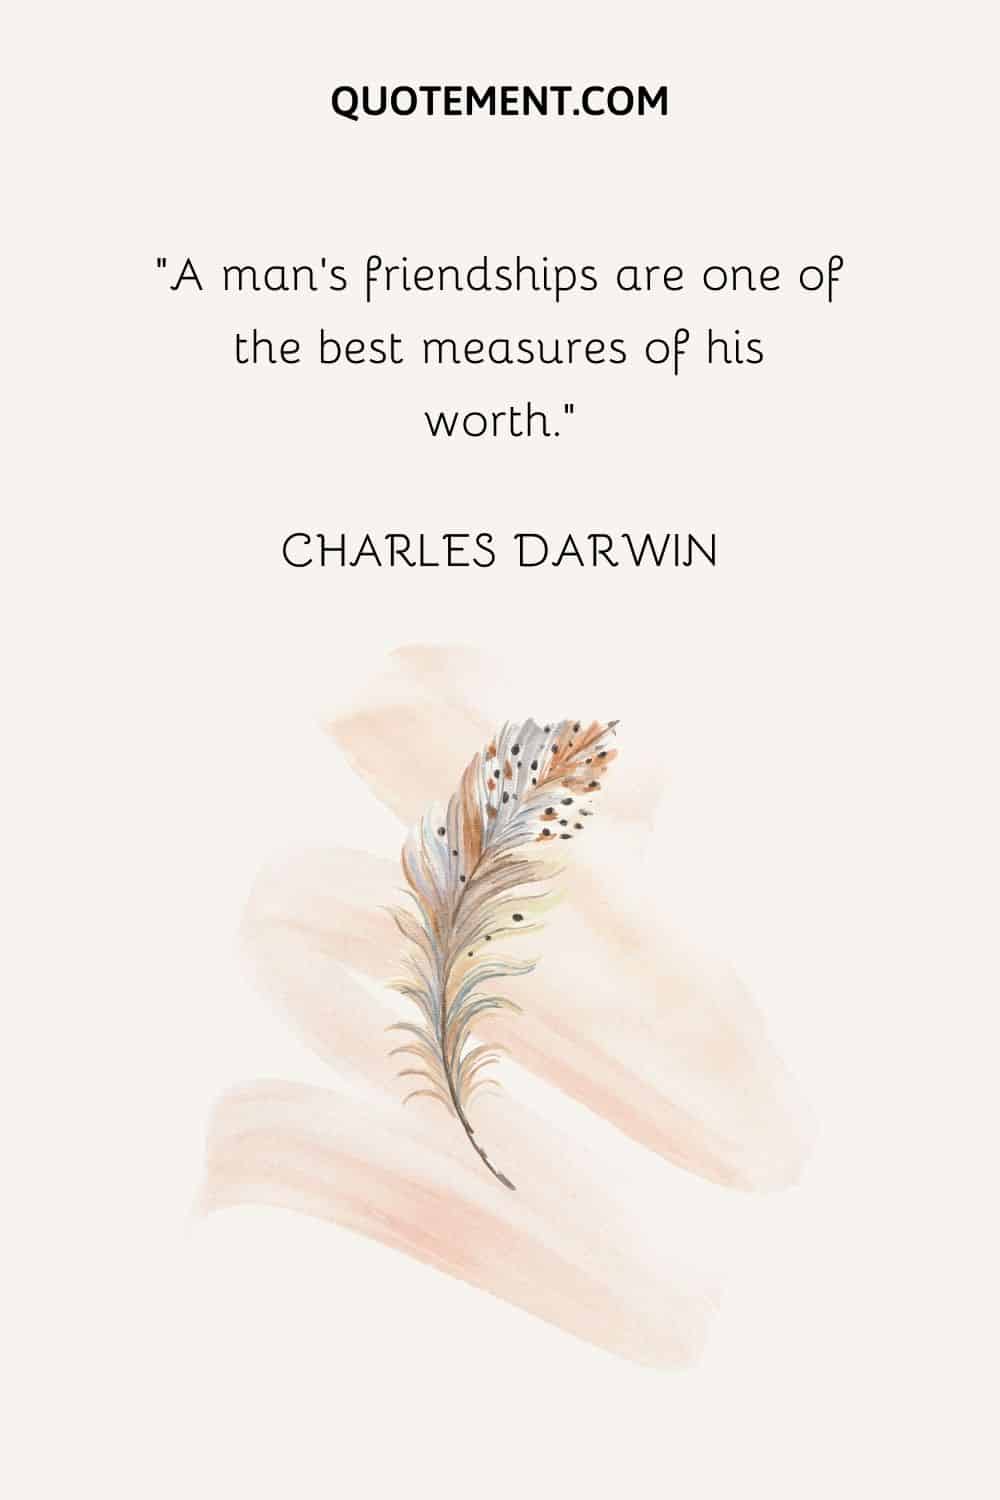 Las amistades de un hombre son una de las mejores medidas de su valía. - Charles Darwin